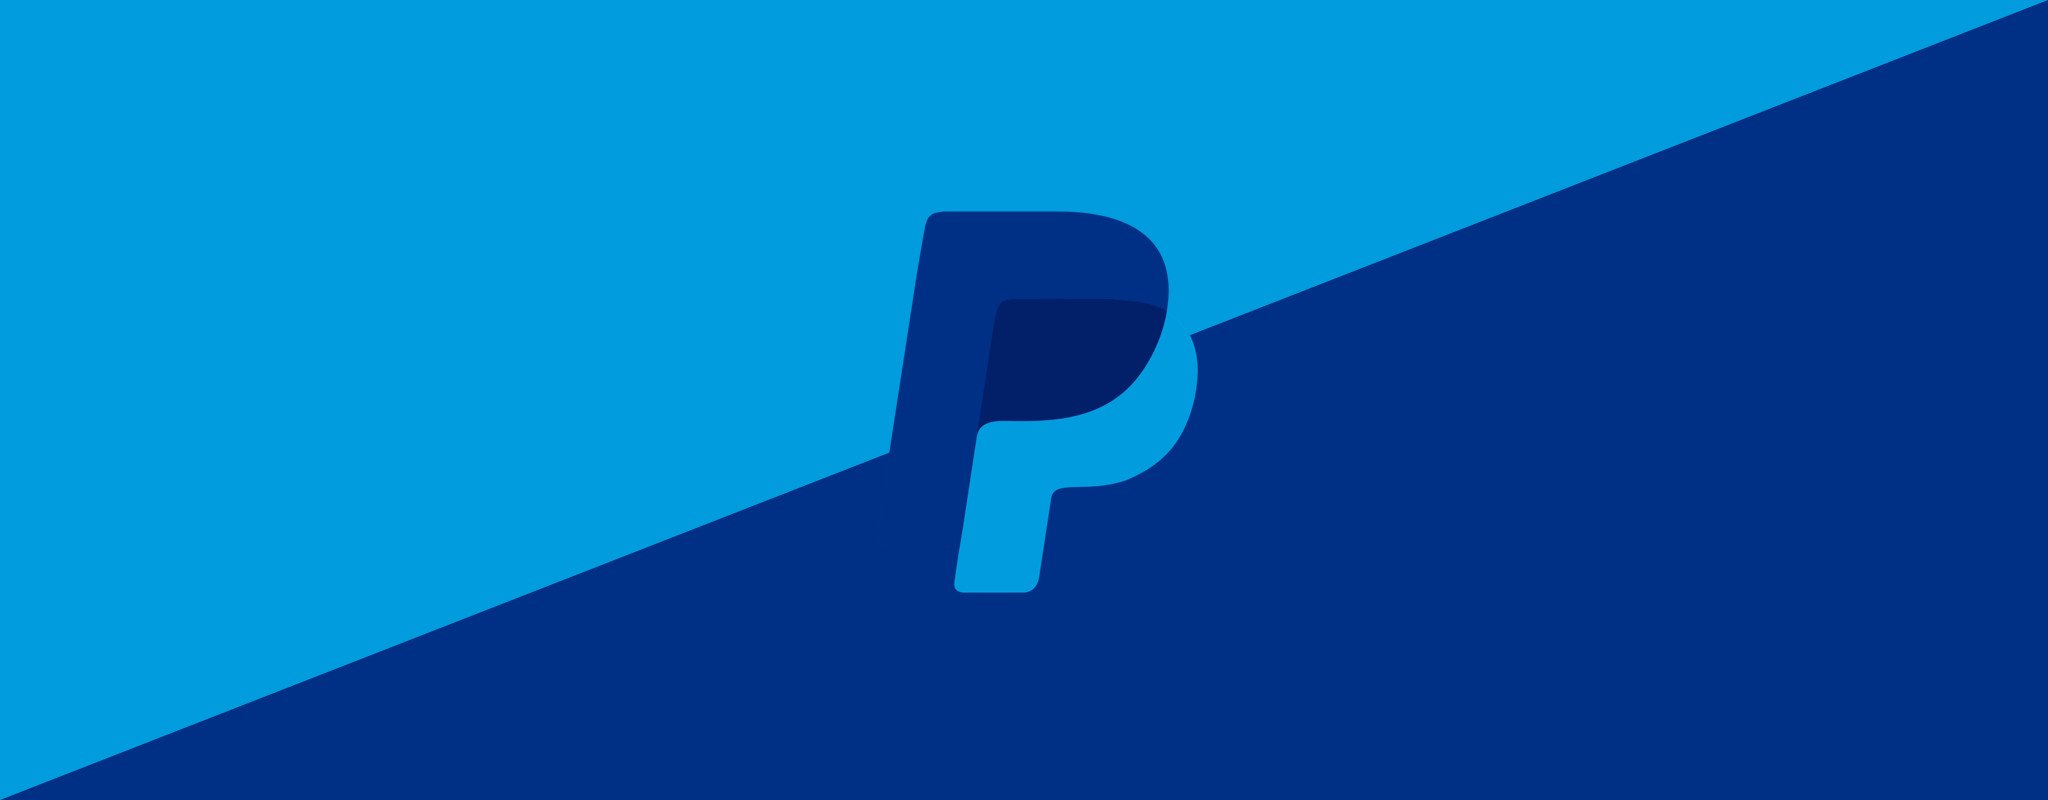 Paypal ще позволи на потребителите да купуват, продават и държат крипто